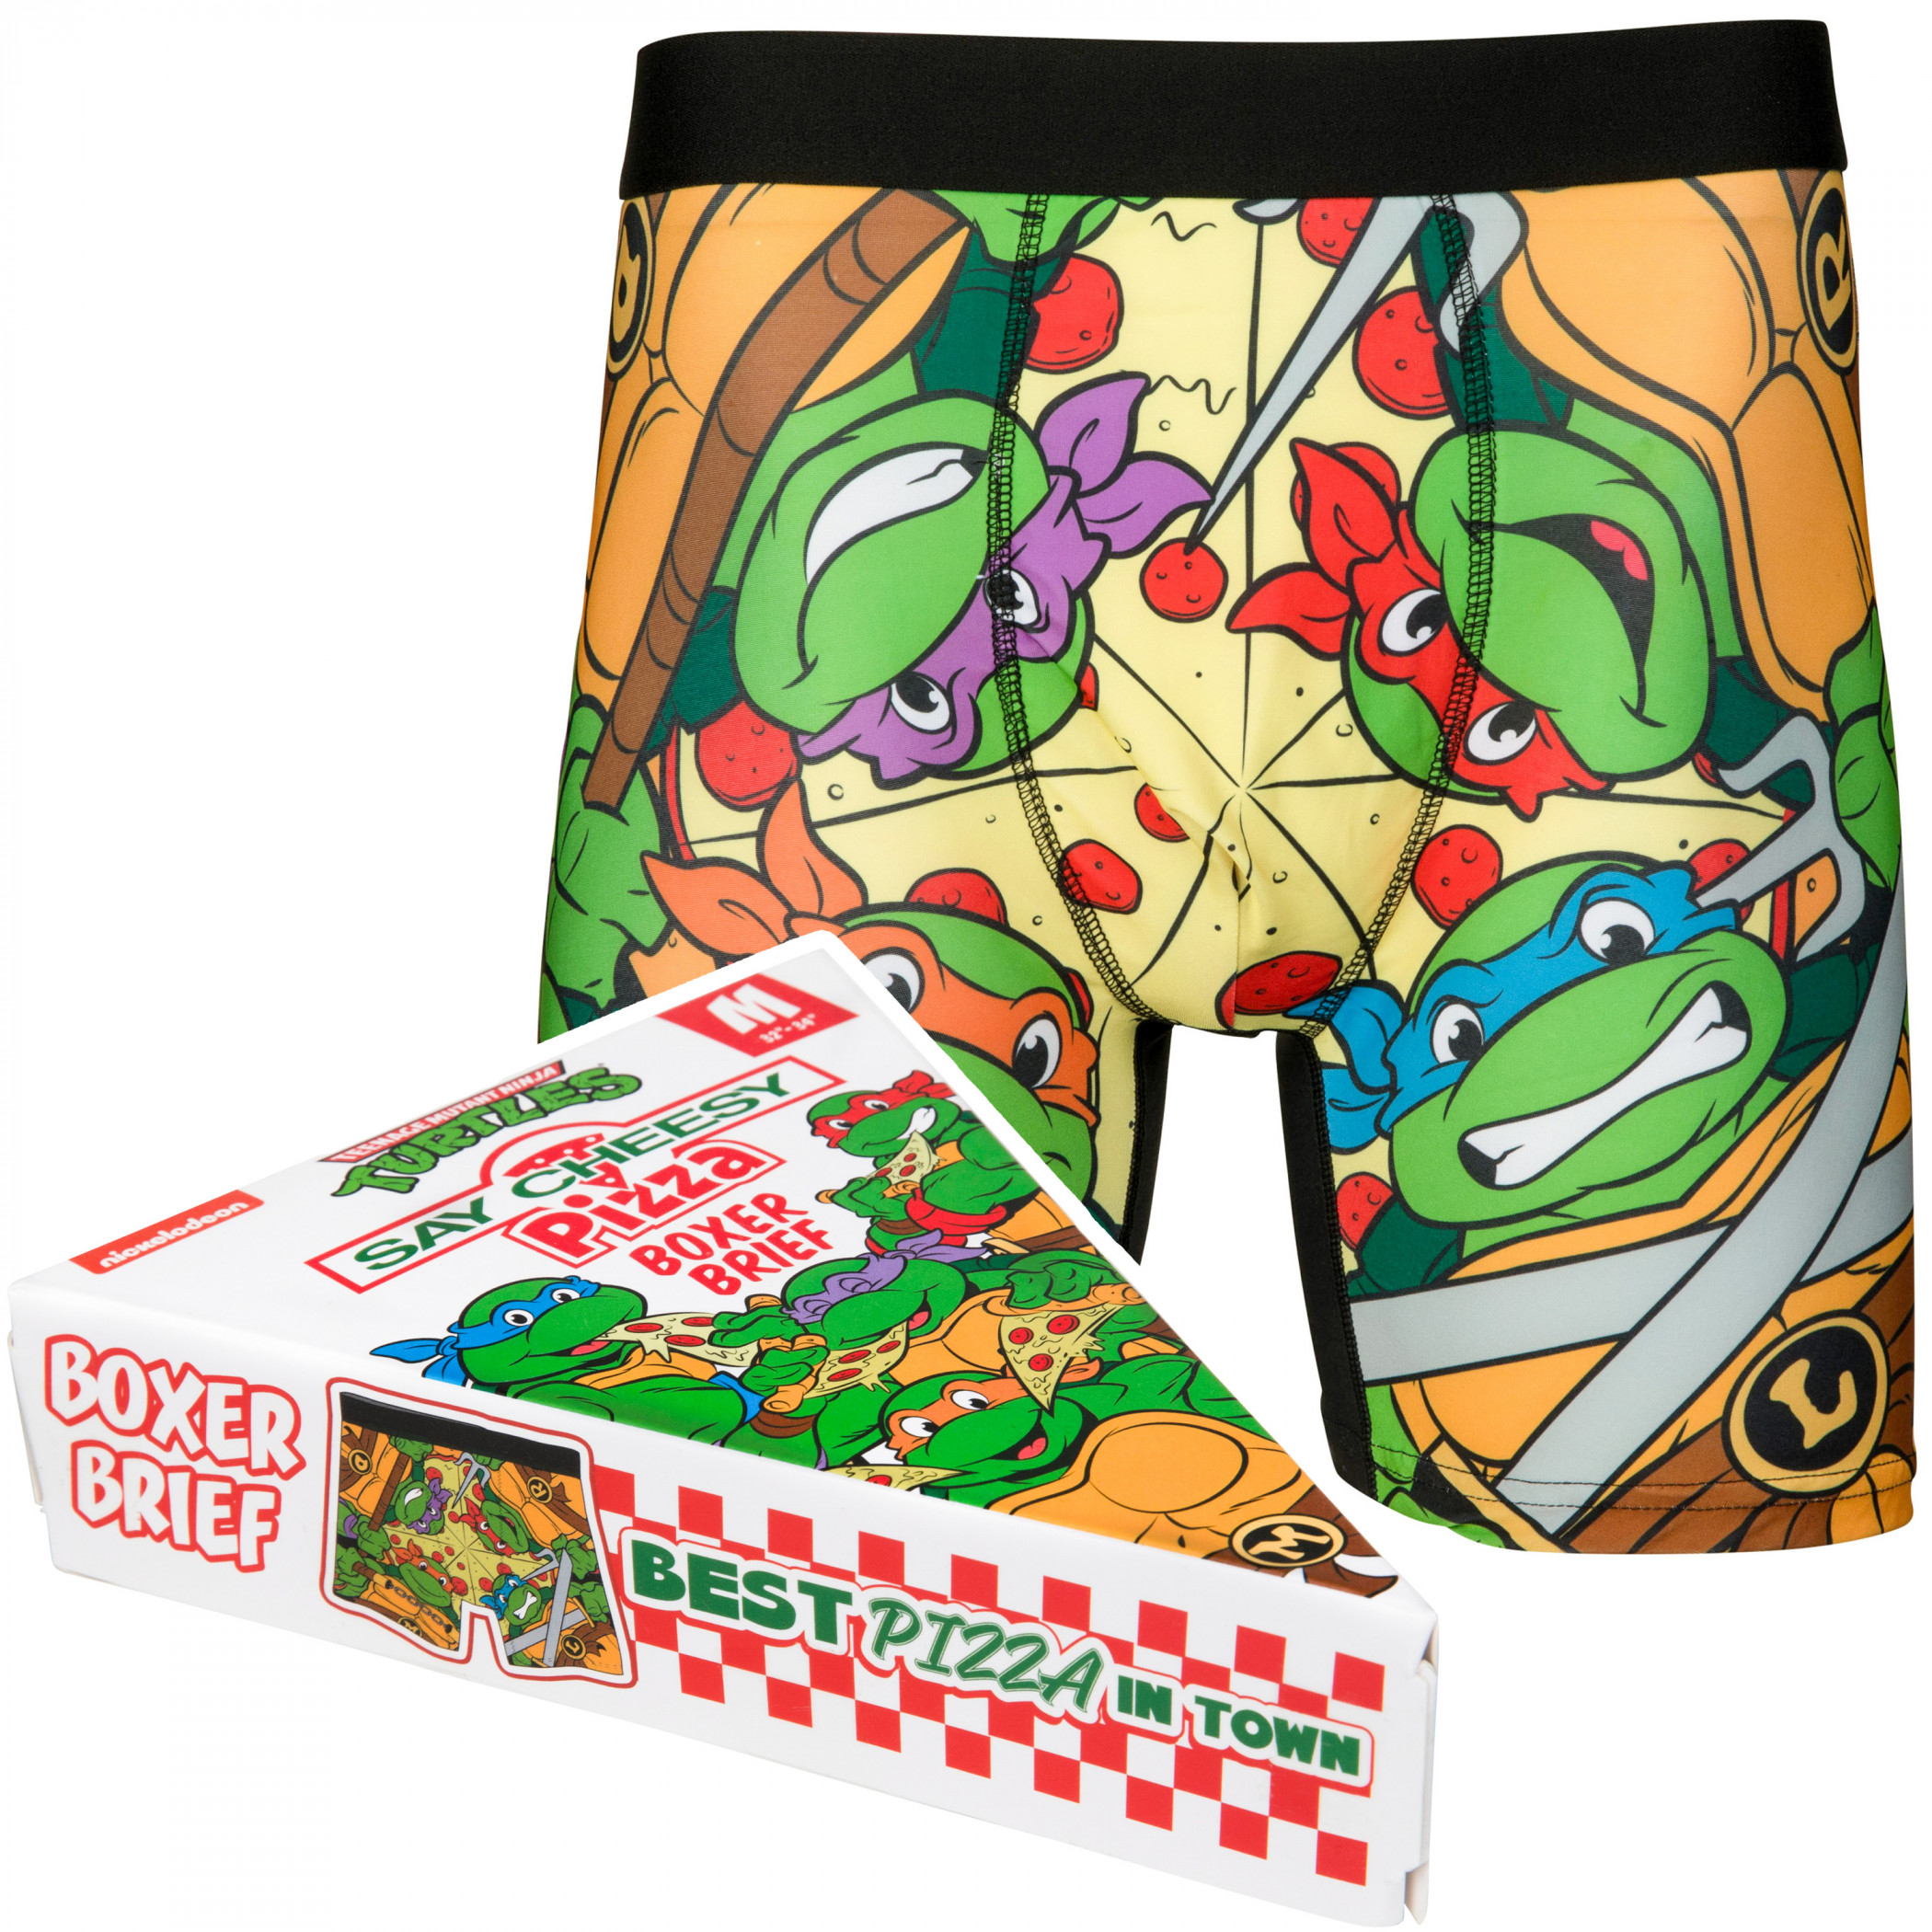 Teenage Mutant Ninja Turtles Pizza Boxer Briefs in Novelty Packaging